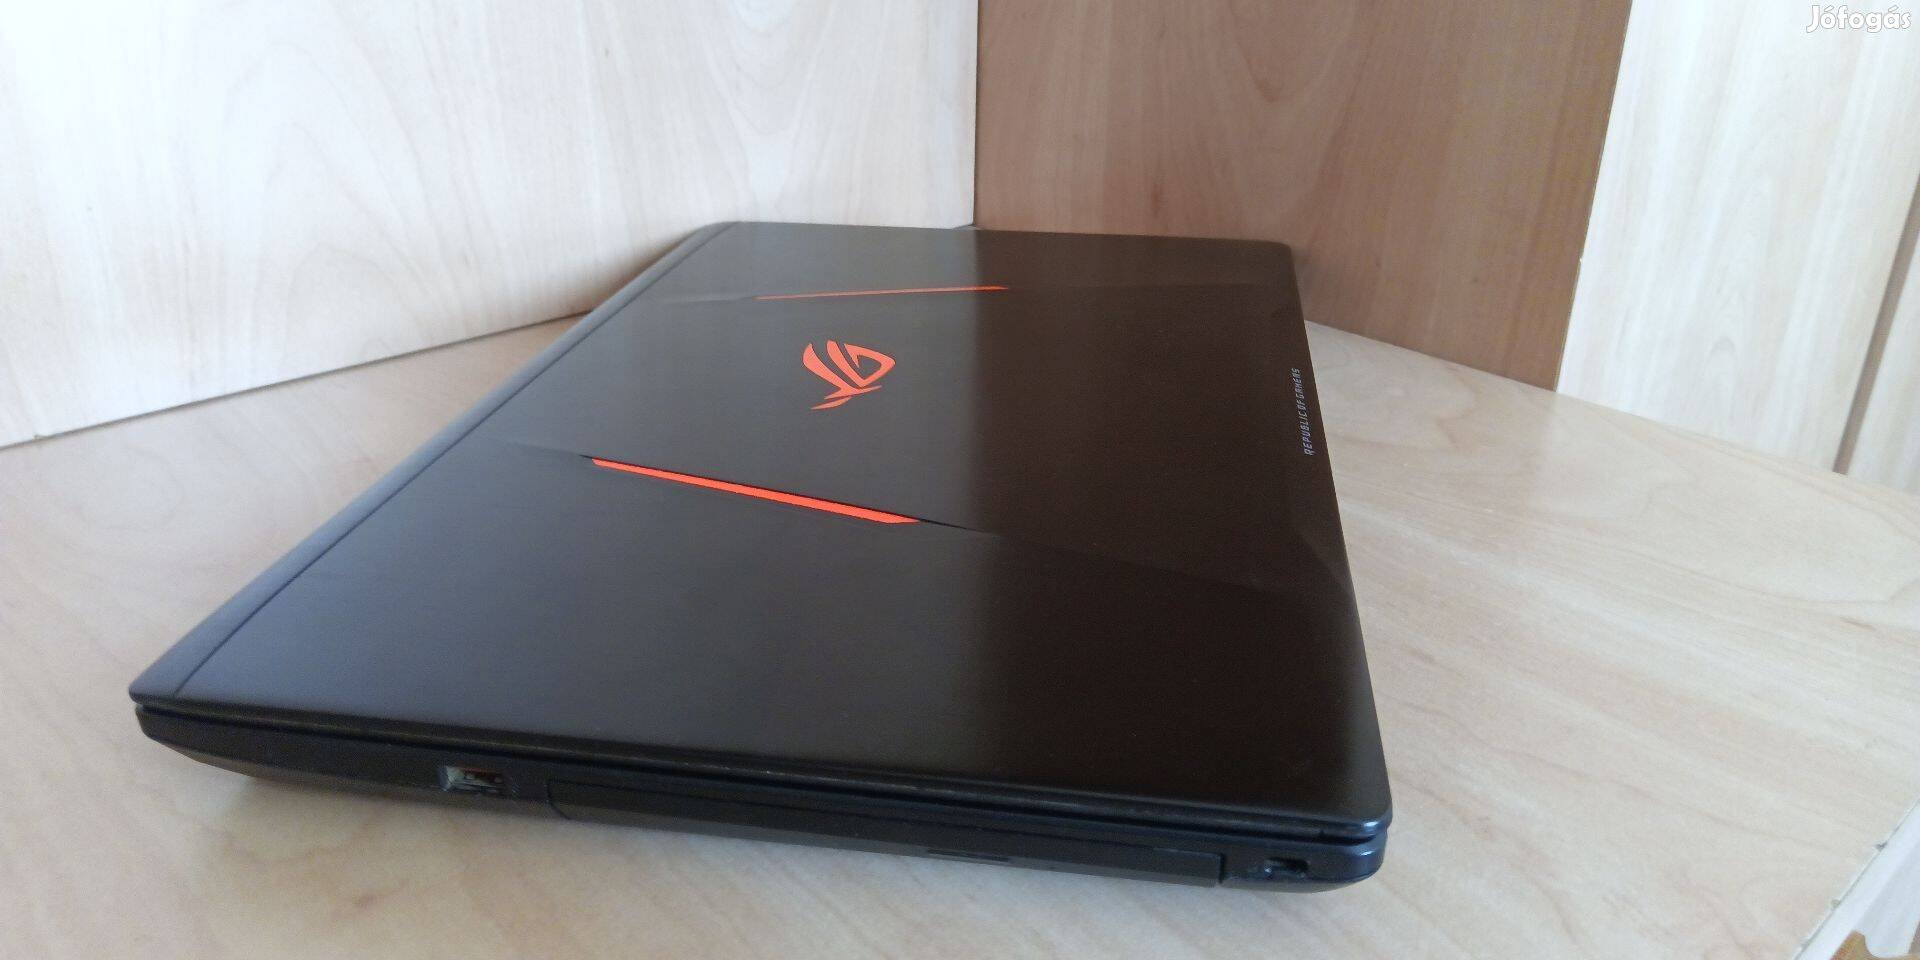 Óriás gamer Aus rog laptop eladó 17.3 hüvelykes Full HD 120 Hz kijelző